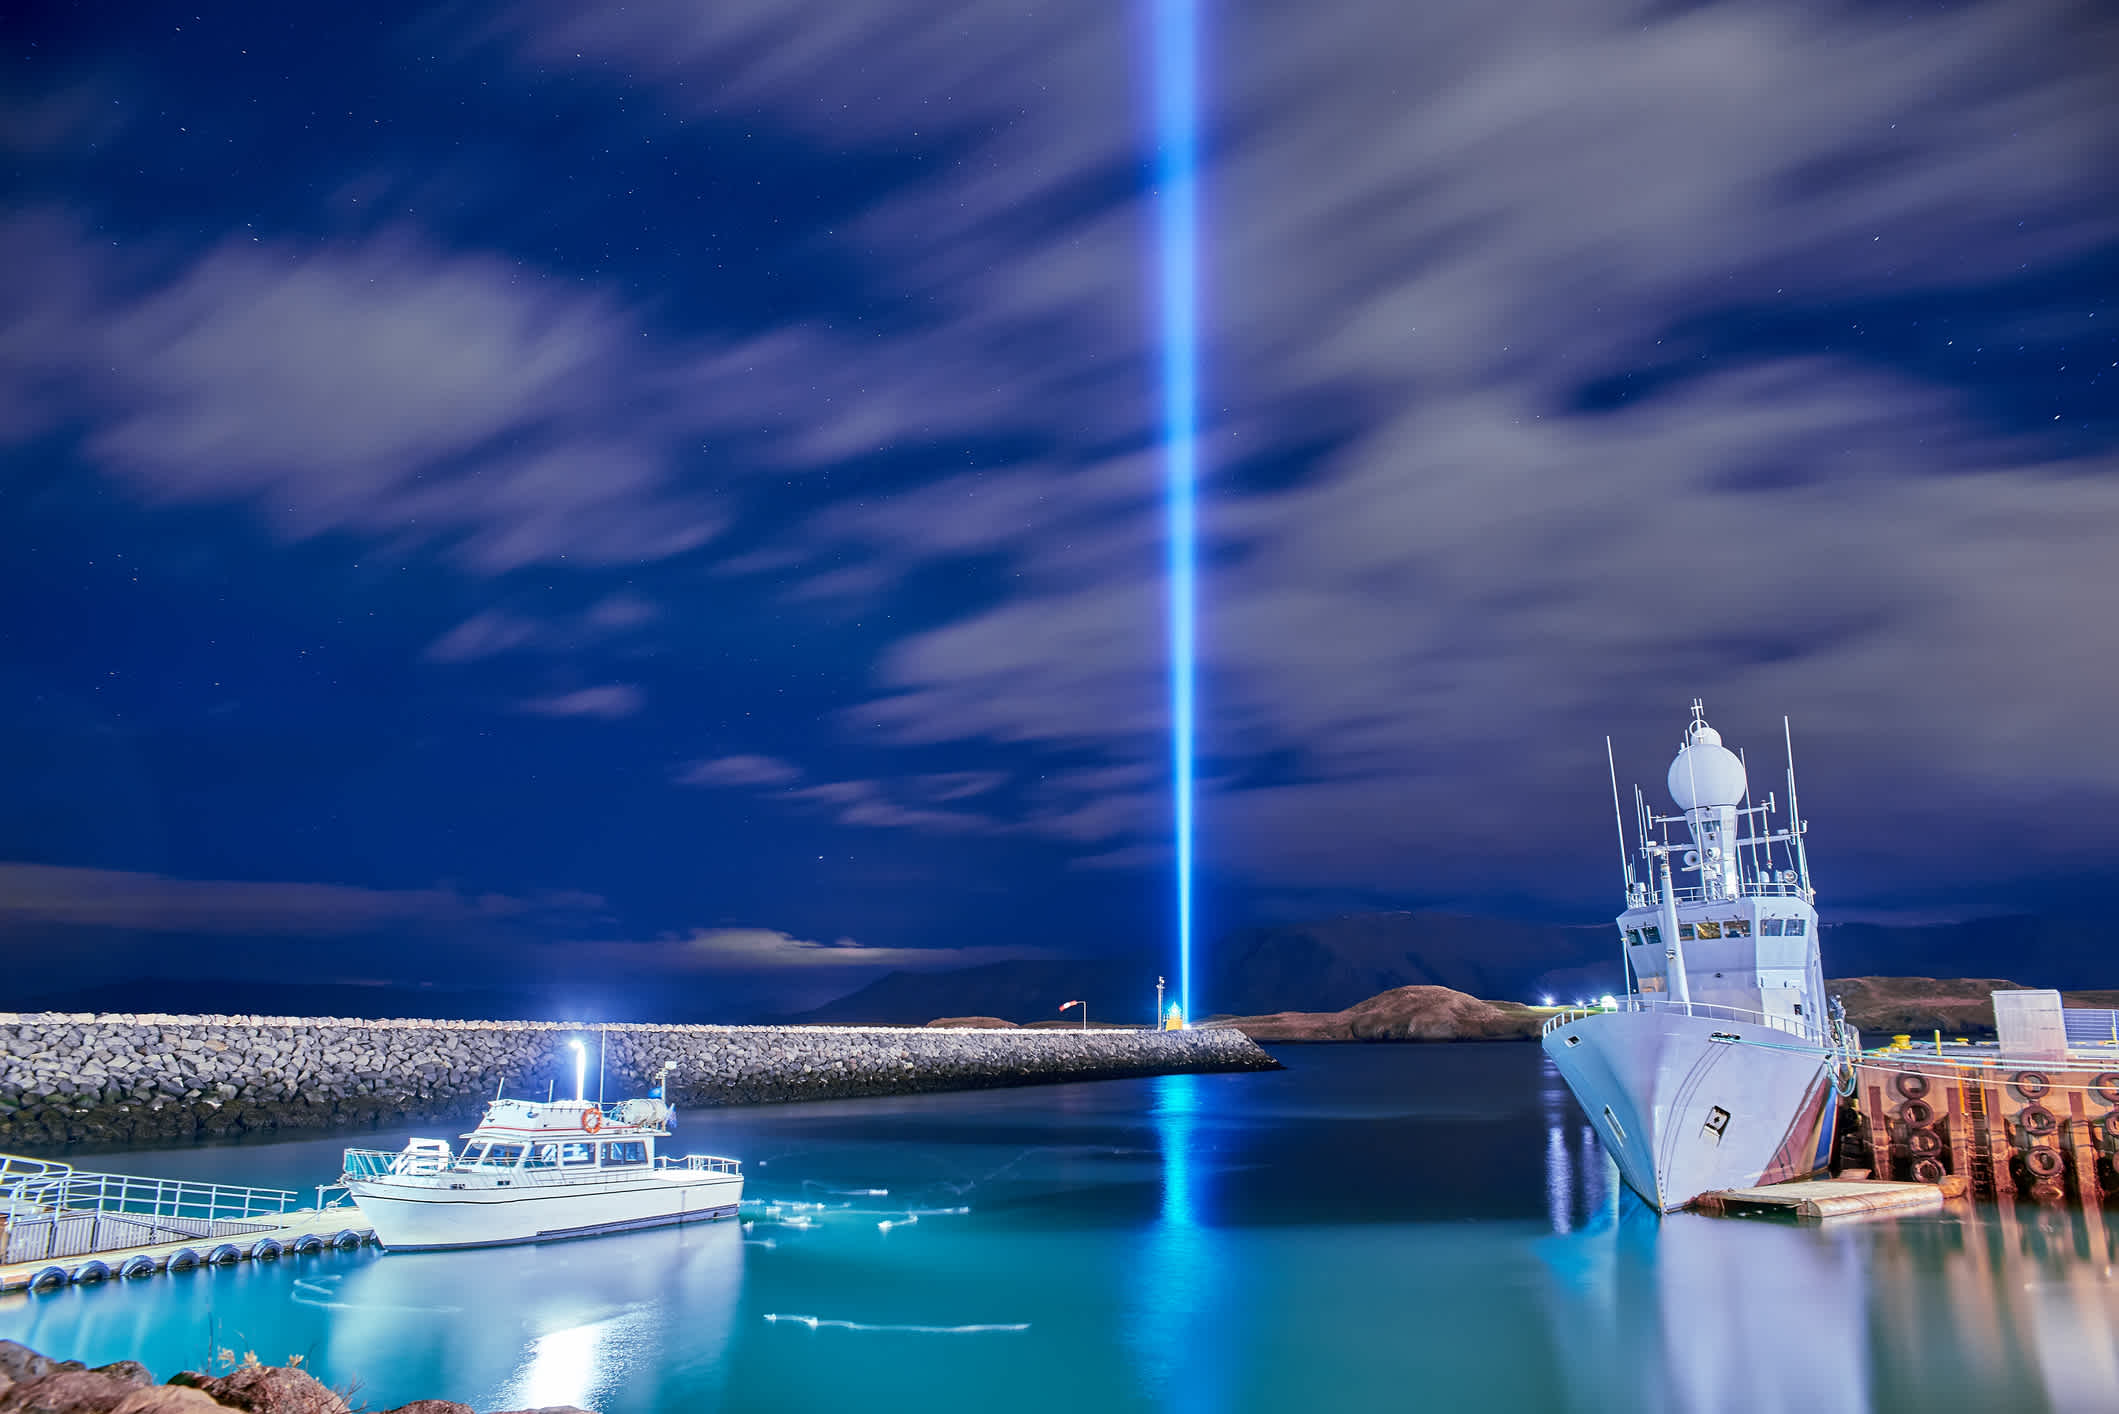 Der Blick auf dem berühmten Leuchtturm von Yoko Ono – der 'Imagine Peace Tower', Viðey-Insel, Island.